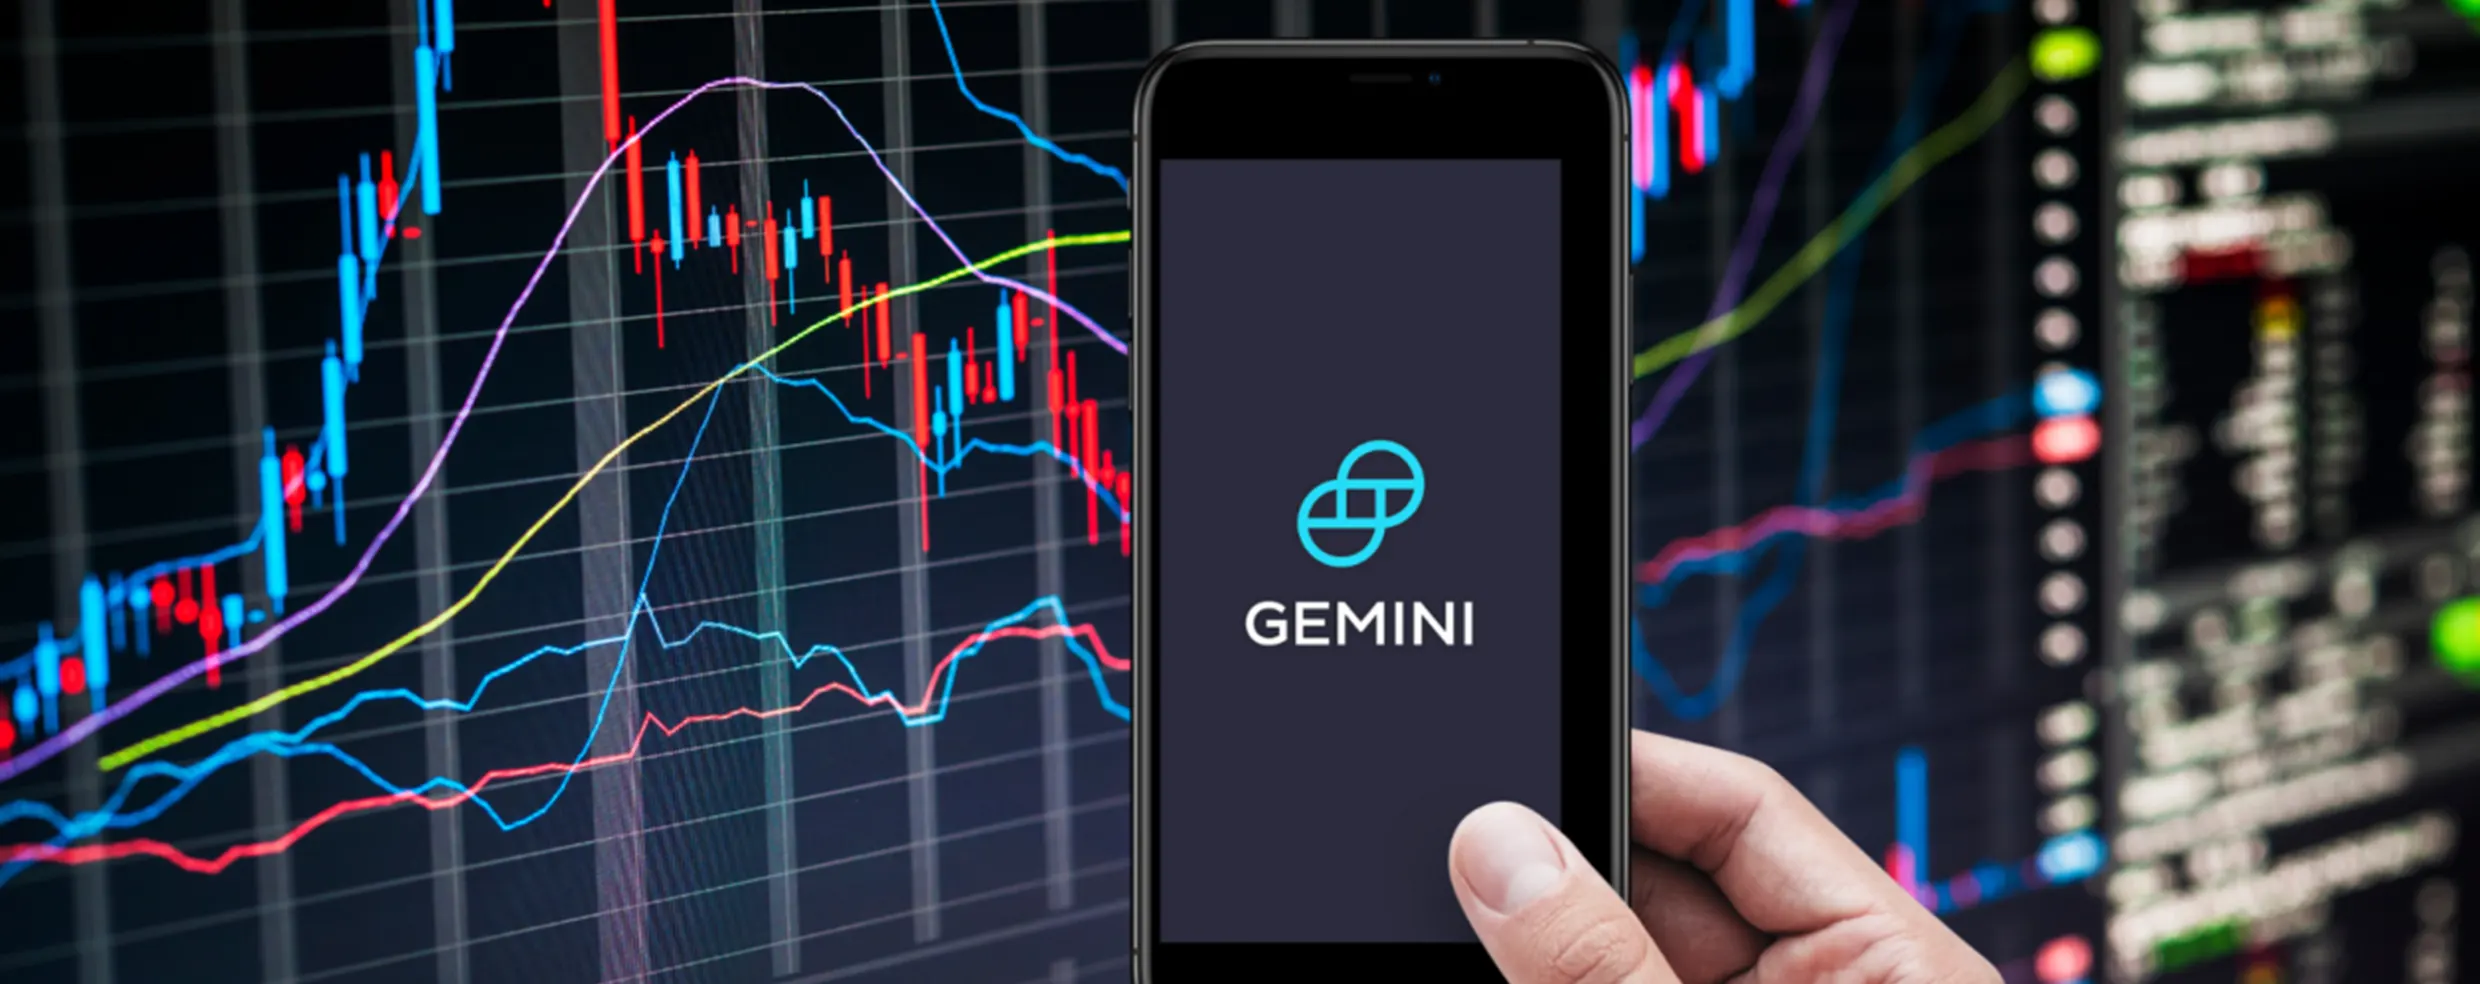 Gemini - Best Crypto Exchanges